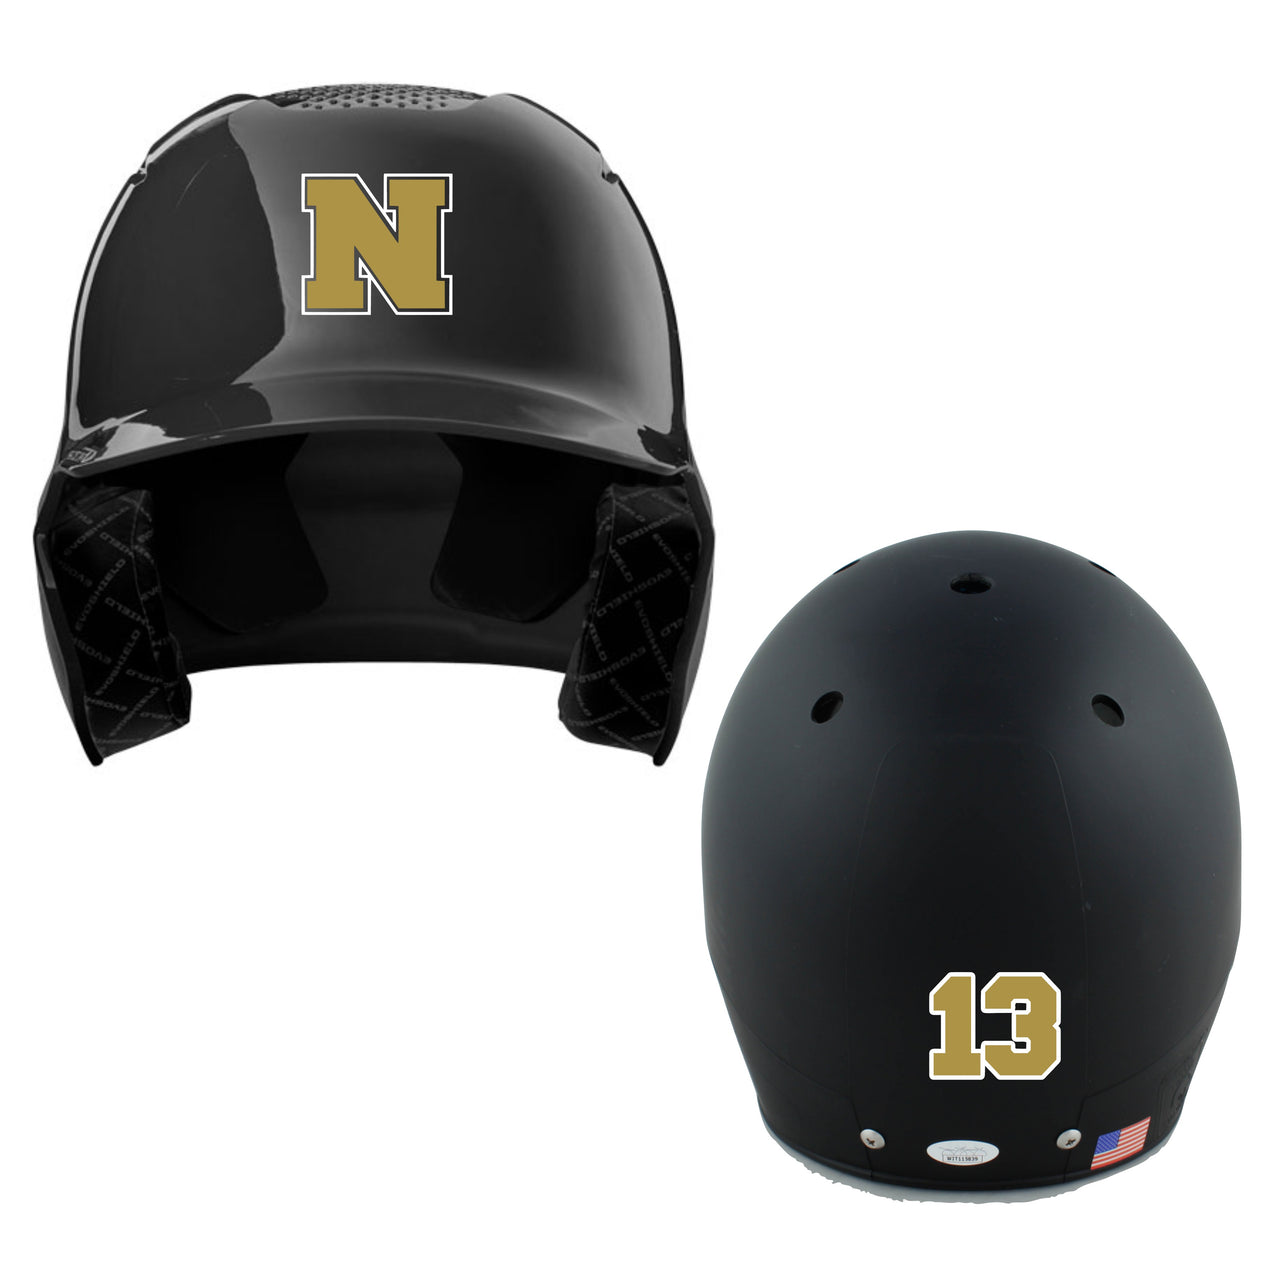 Helmet Decals - (NE Gold)